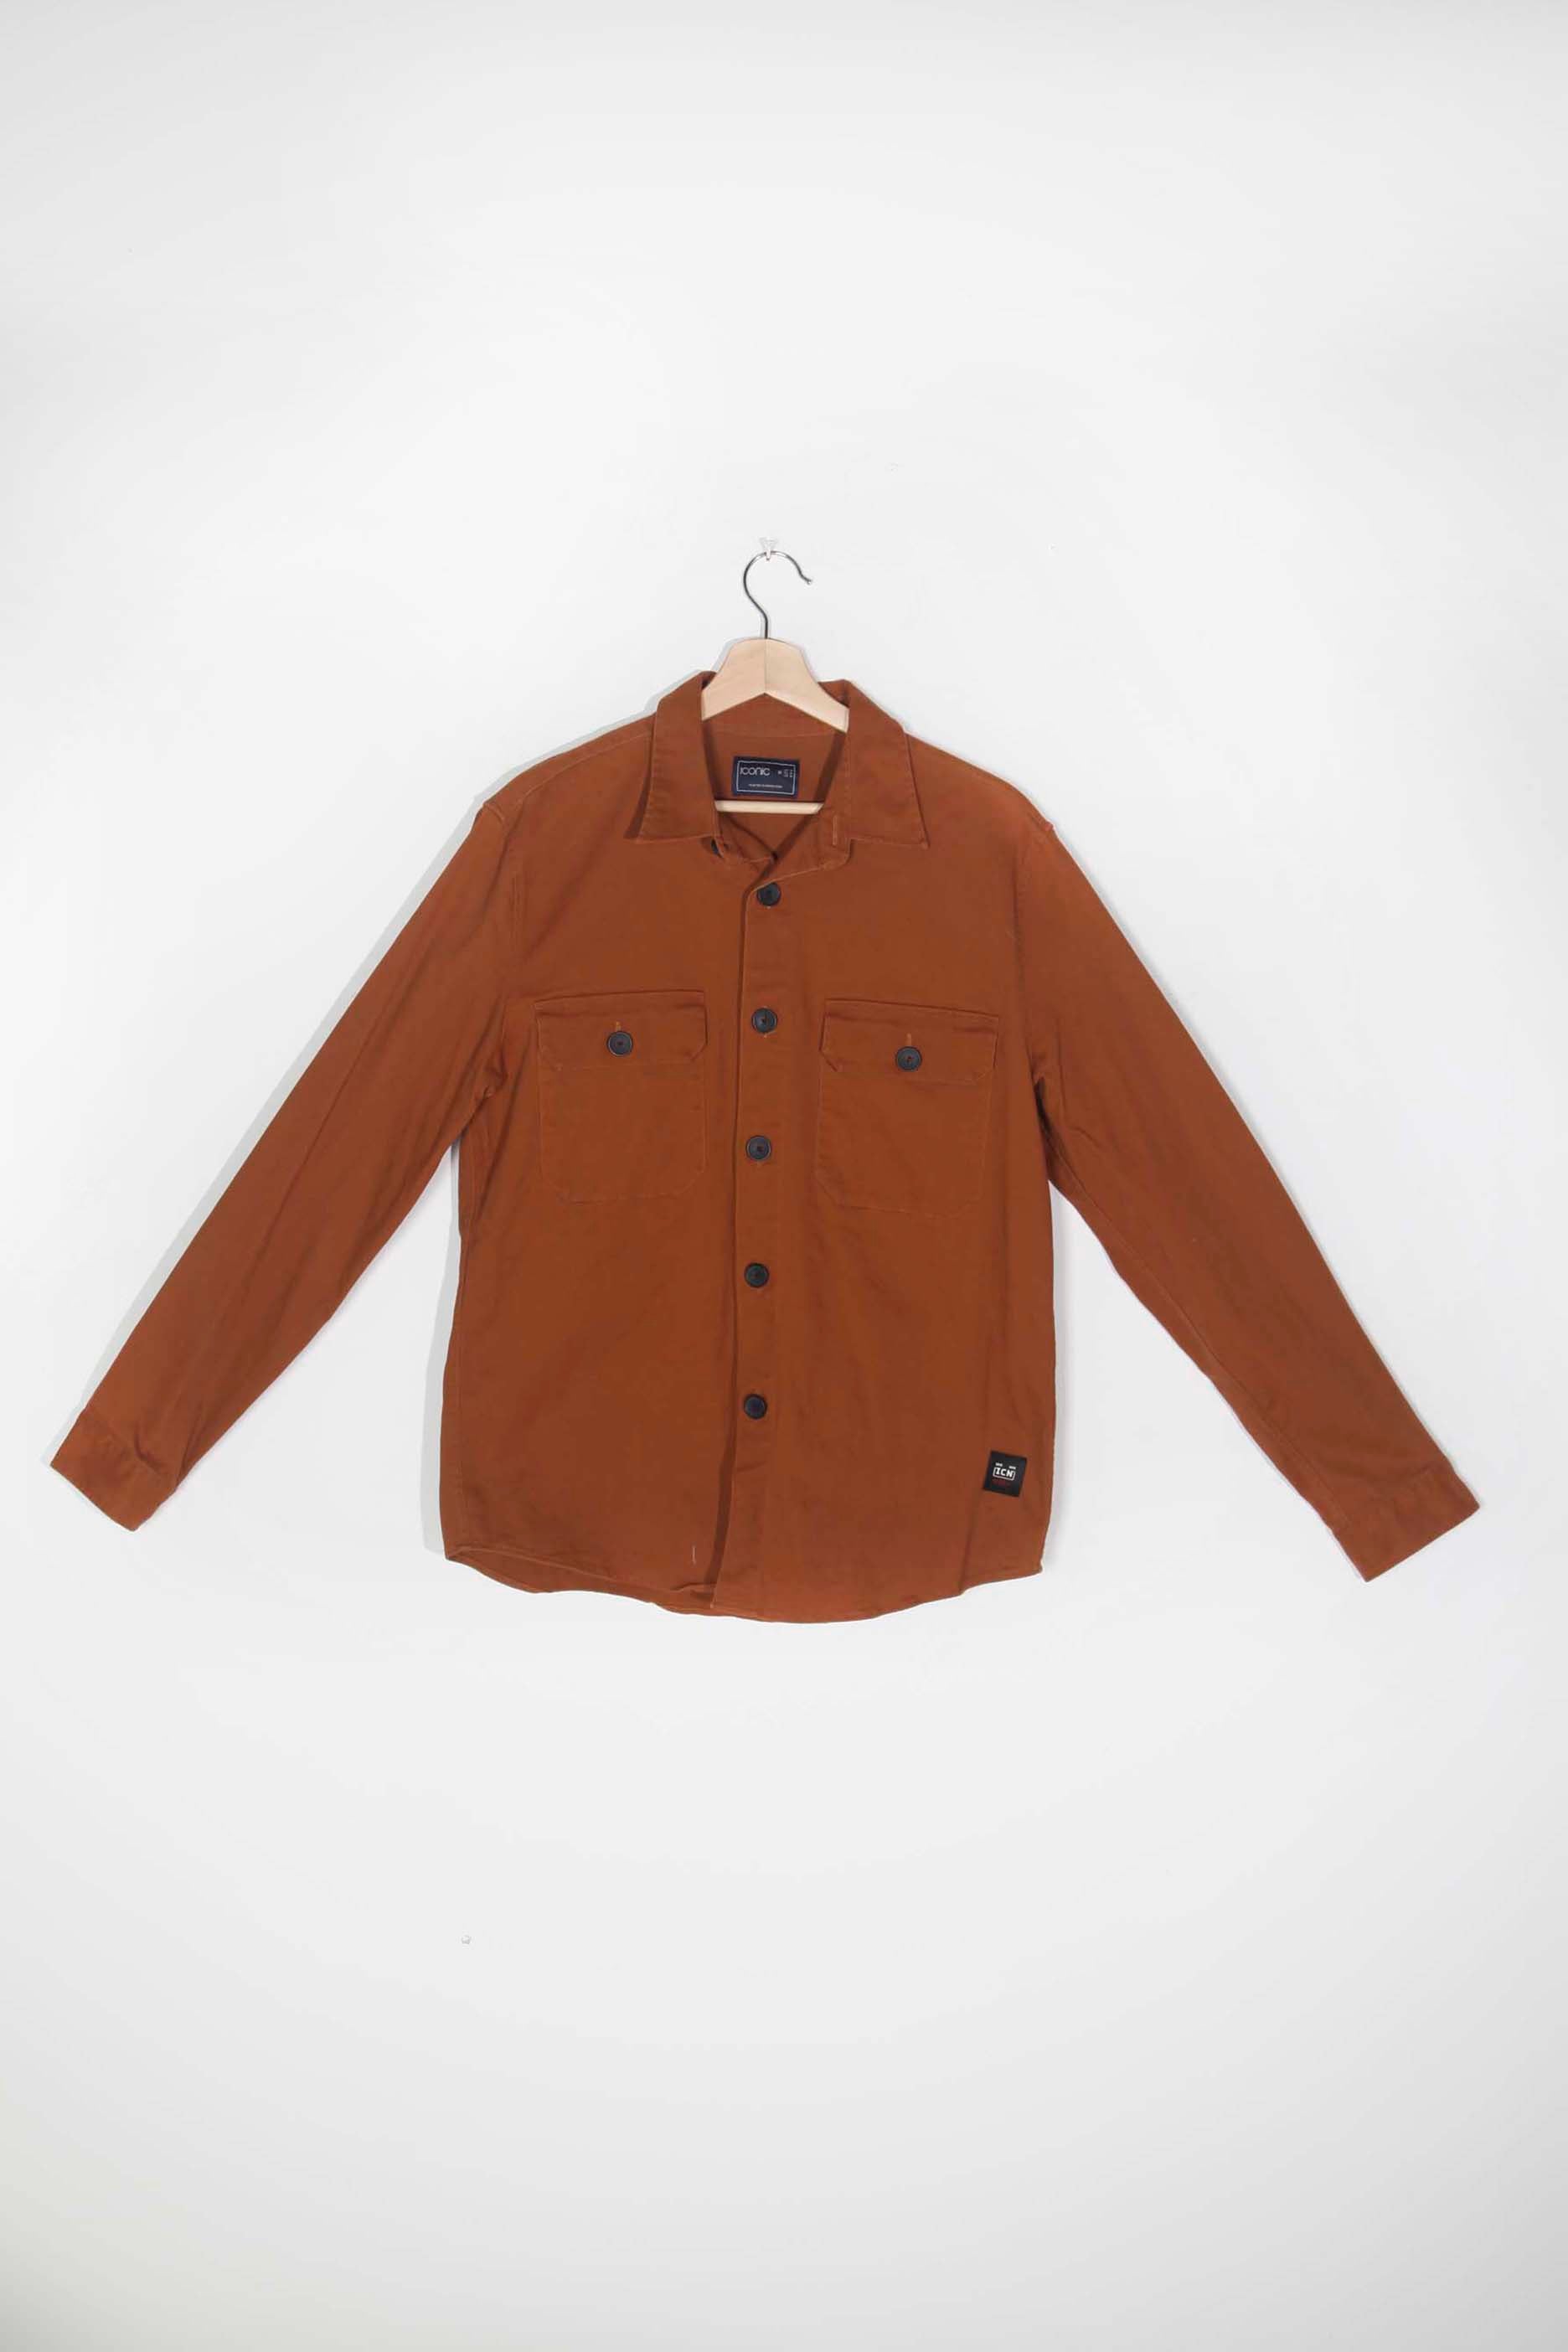 Men's Brown Shirt Jacket